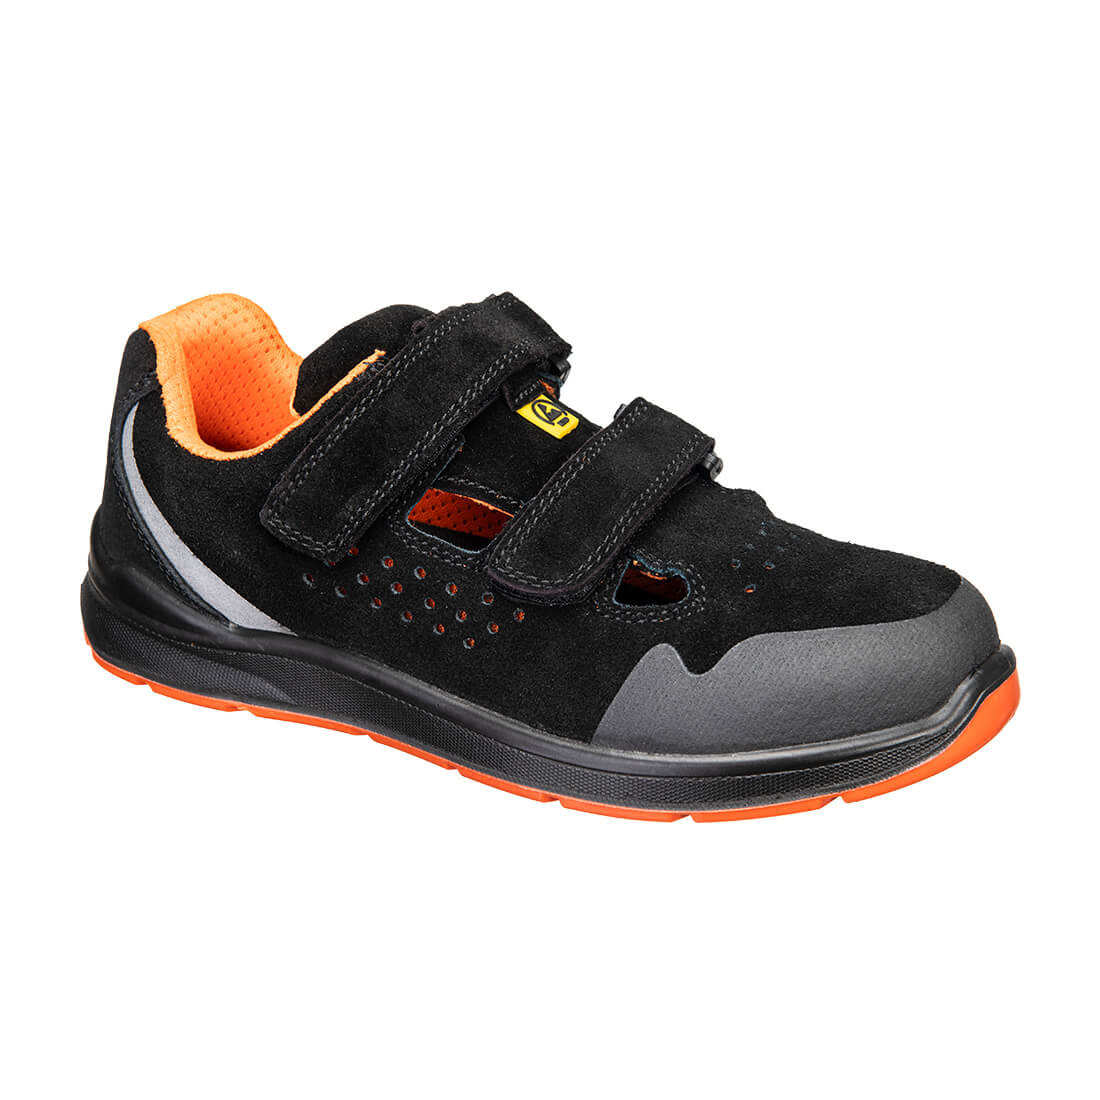 Sandales de sécurité S1P ESD SR FO - Les chaussures de protection